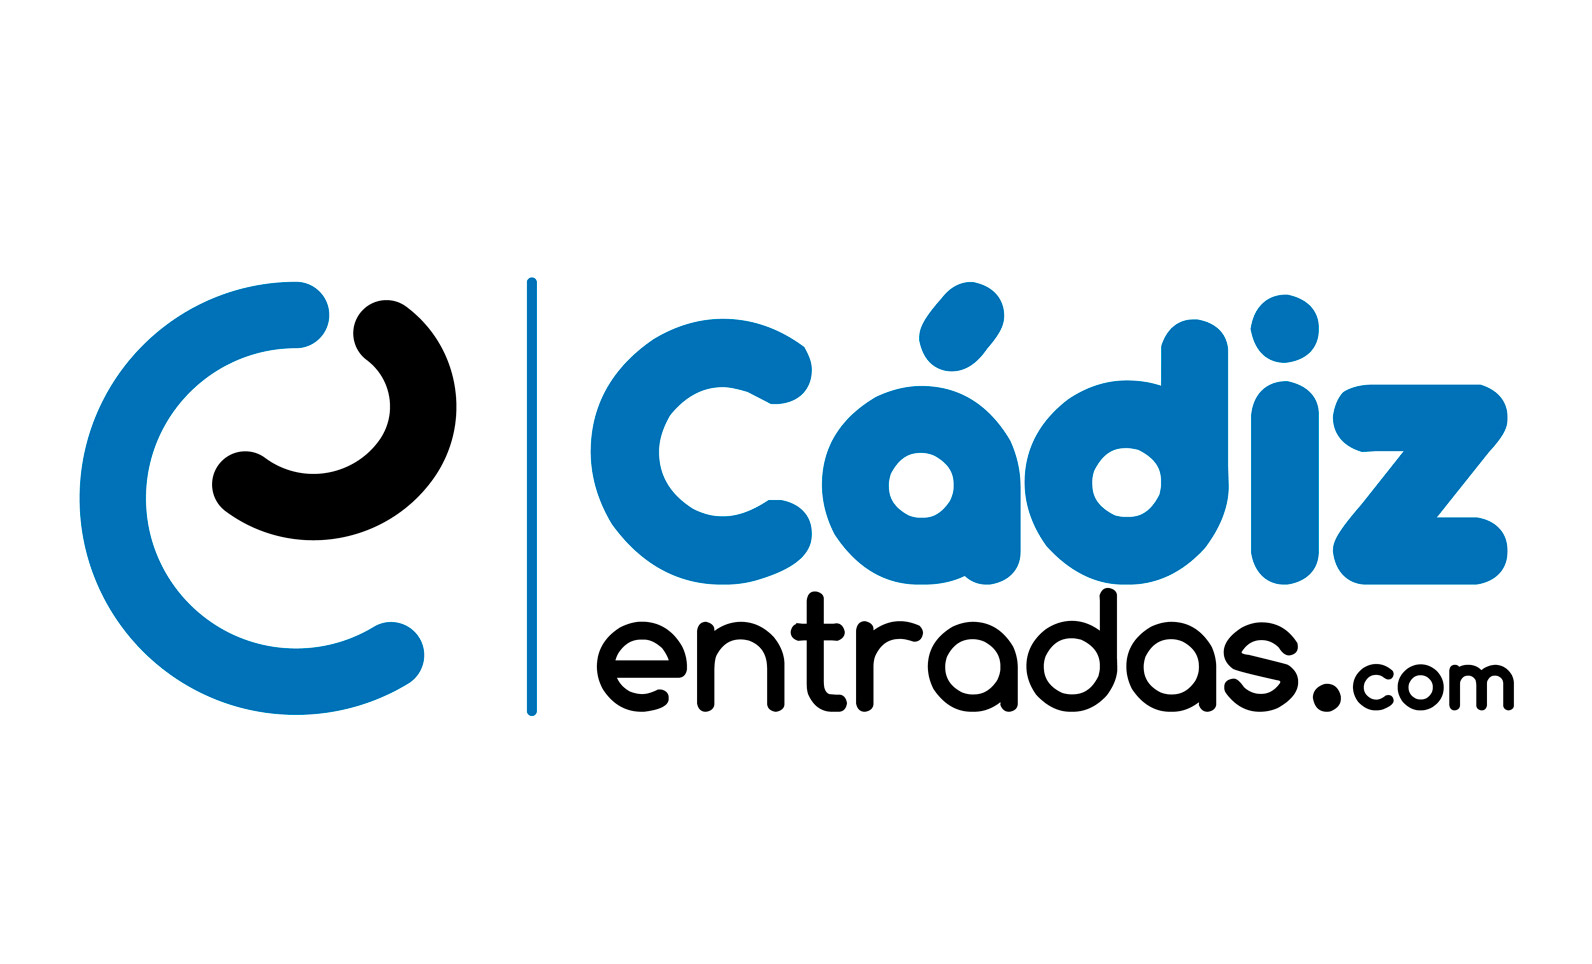 Cádiz entradas.com